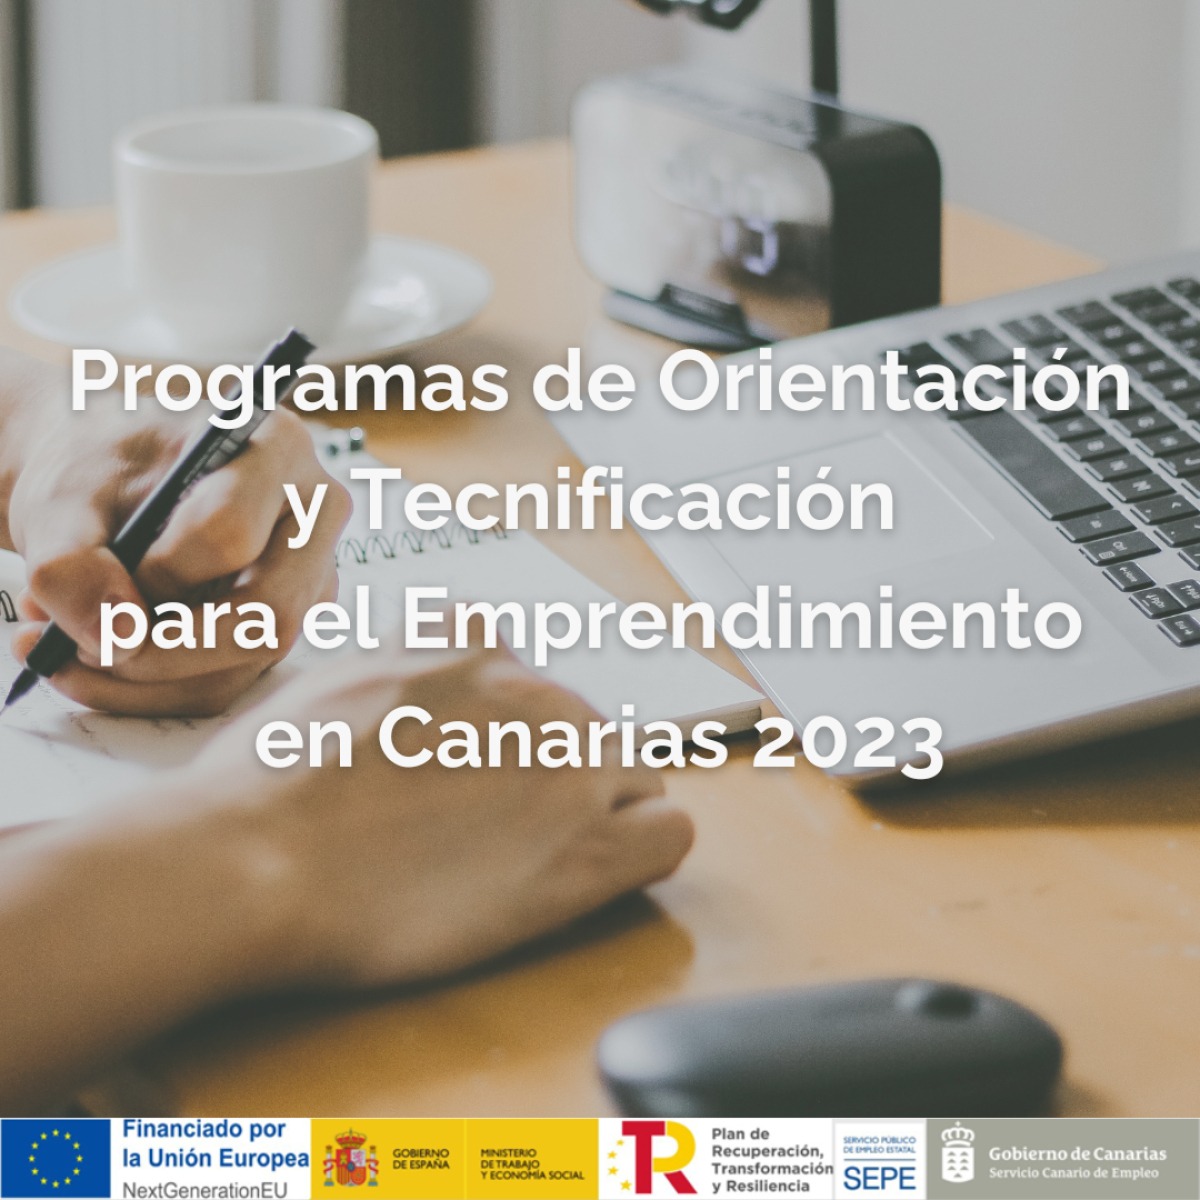 Programas de Orientación y Tecnificación para el Emprendimiento en Canarias 2023